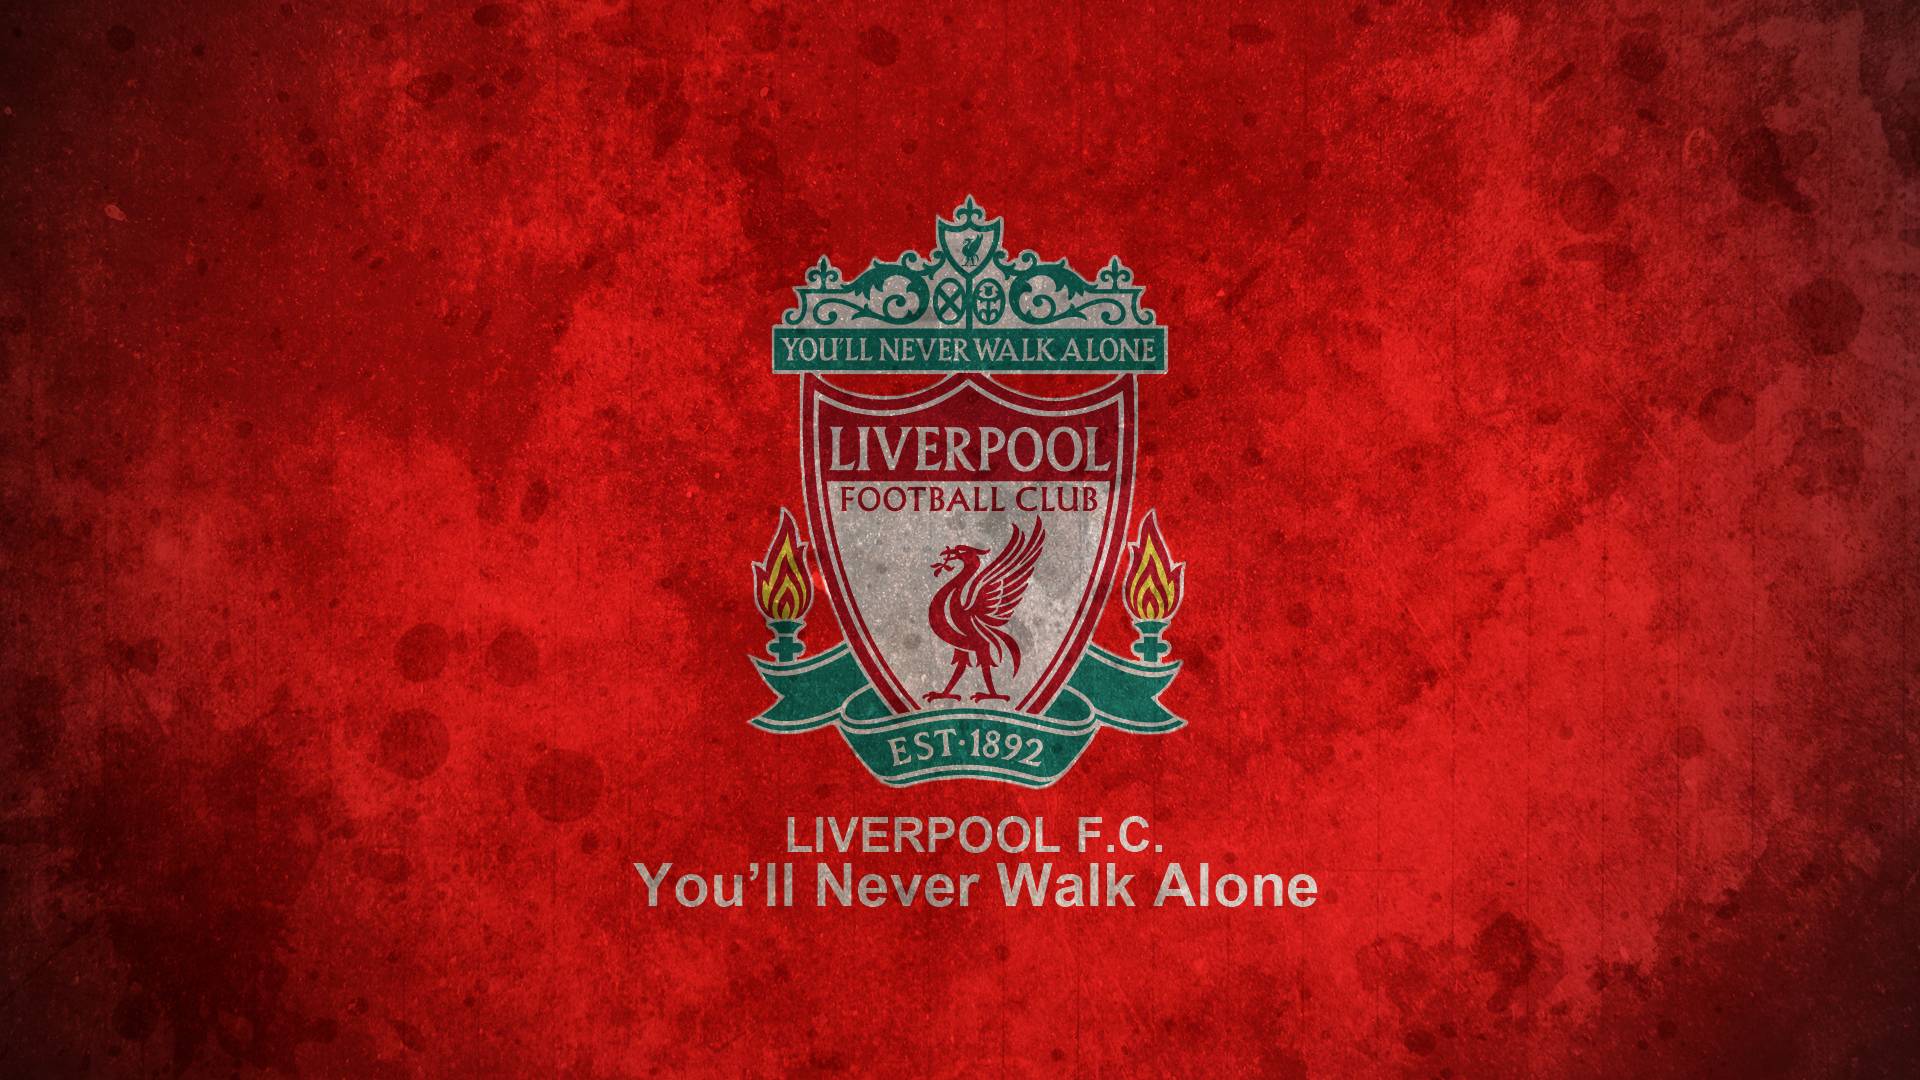 Nếu bạn là fan cuồng Liverpool, hình nền Liverpool FC Wallpaper chắc chắn không thể thiếu trong bộ sưu tập của bạn! Được thiết kế đầy tinh tế và uy lực, hình nền này sẽ khiến bạn không thể rời mắt khỏi nó.